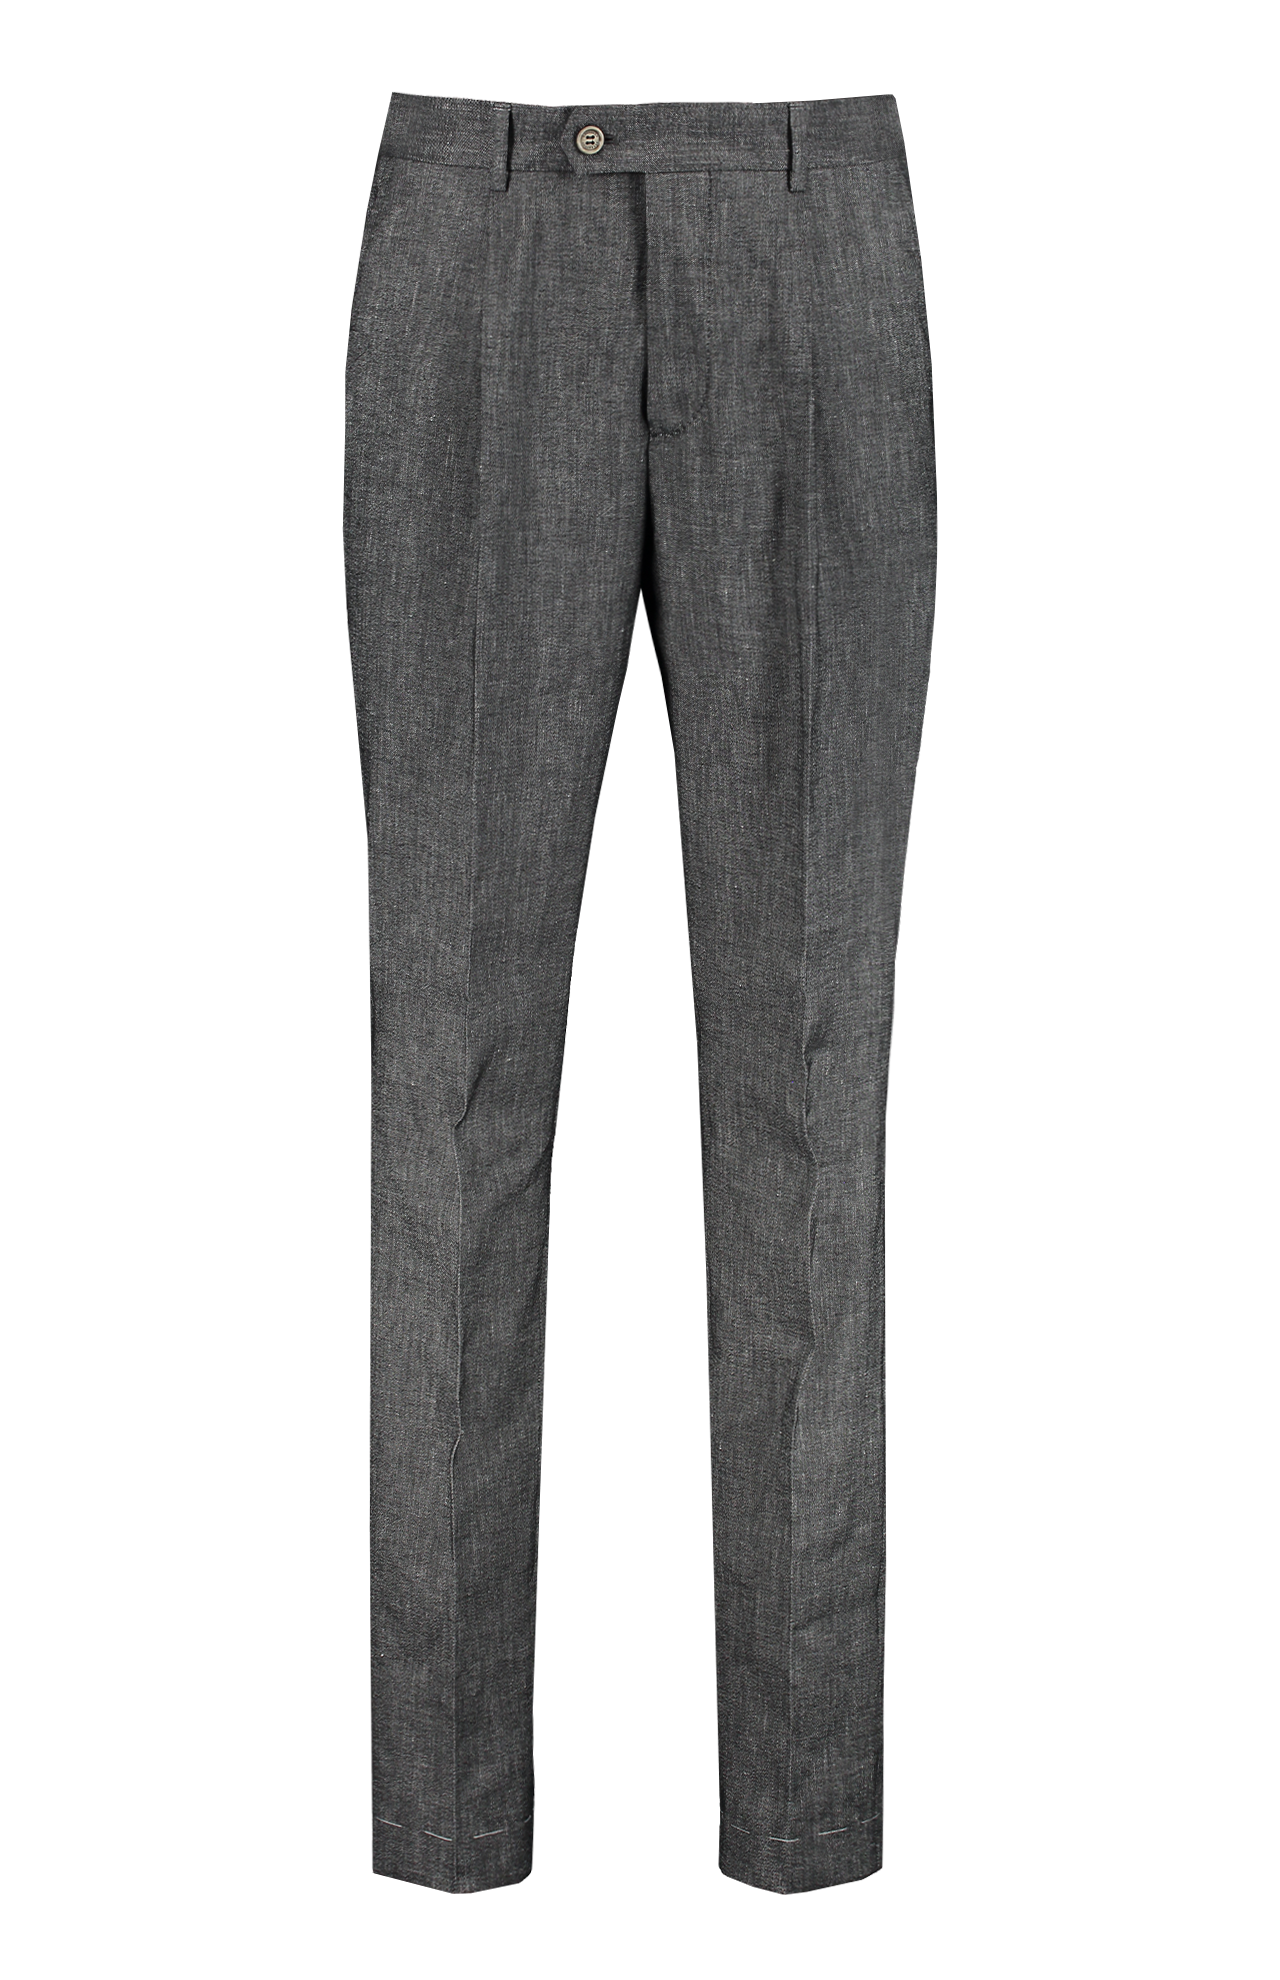 Brunello Cucinelli Single Pleat Pant Front Mannequin Image (7083631640691)